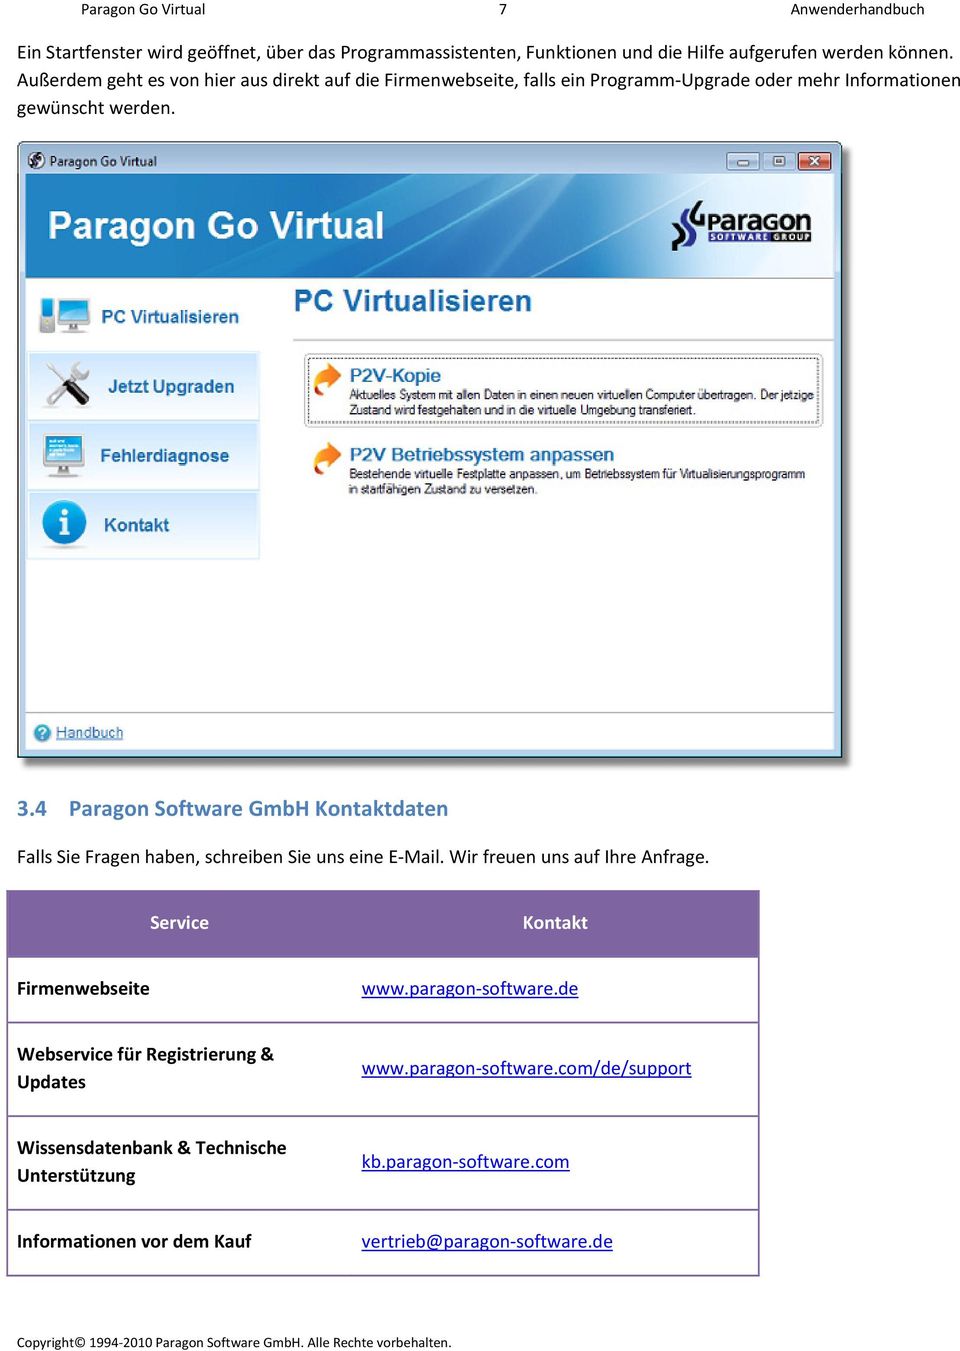 4 Paragon Software GmbH Kontaktdaten Falls Sie Fragen haben, schreiben Sie uns eine E Mail. Wir freuen uns auf Ihre Anfrage. Service Kontakt Firmenwebseite www.